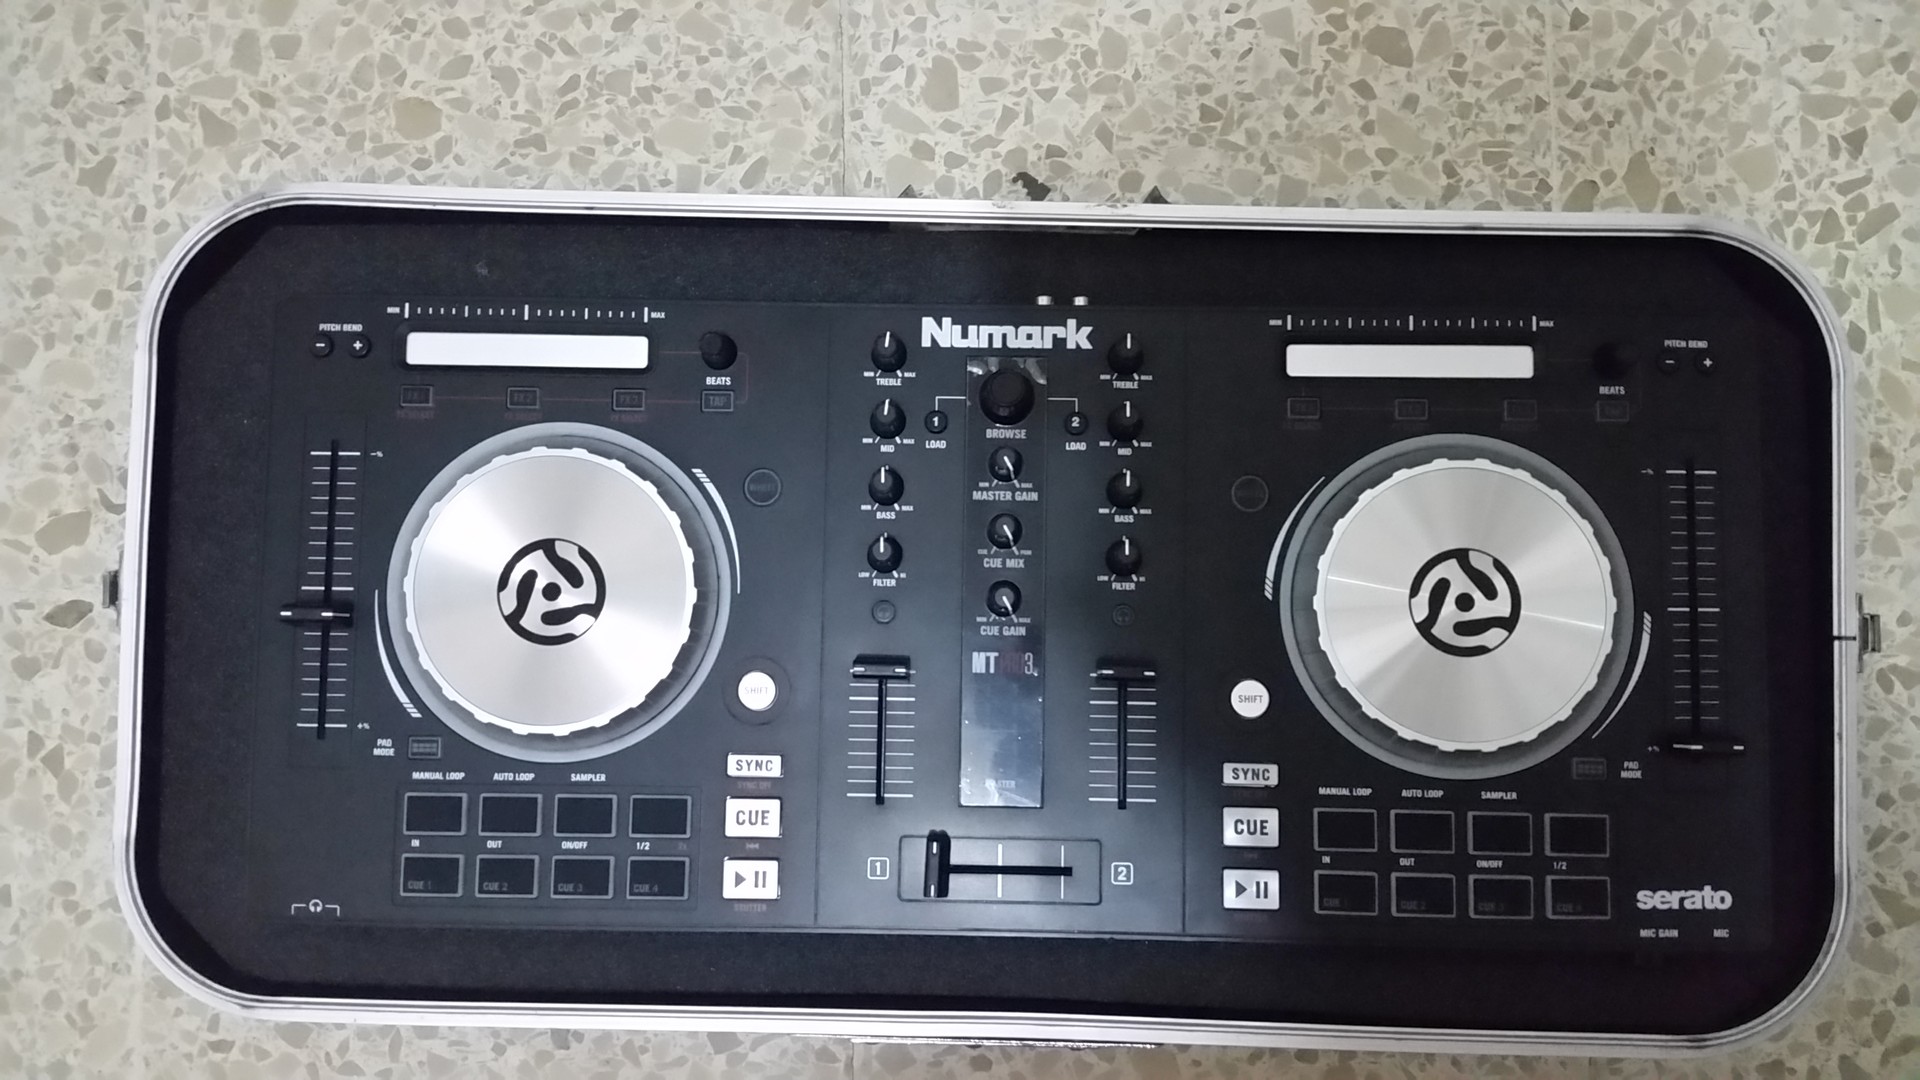 instrumentos musicales - Platos Mixer Consolas Controladora DJ Pioneer Numark gb xr xs pro max galaxnote 5